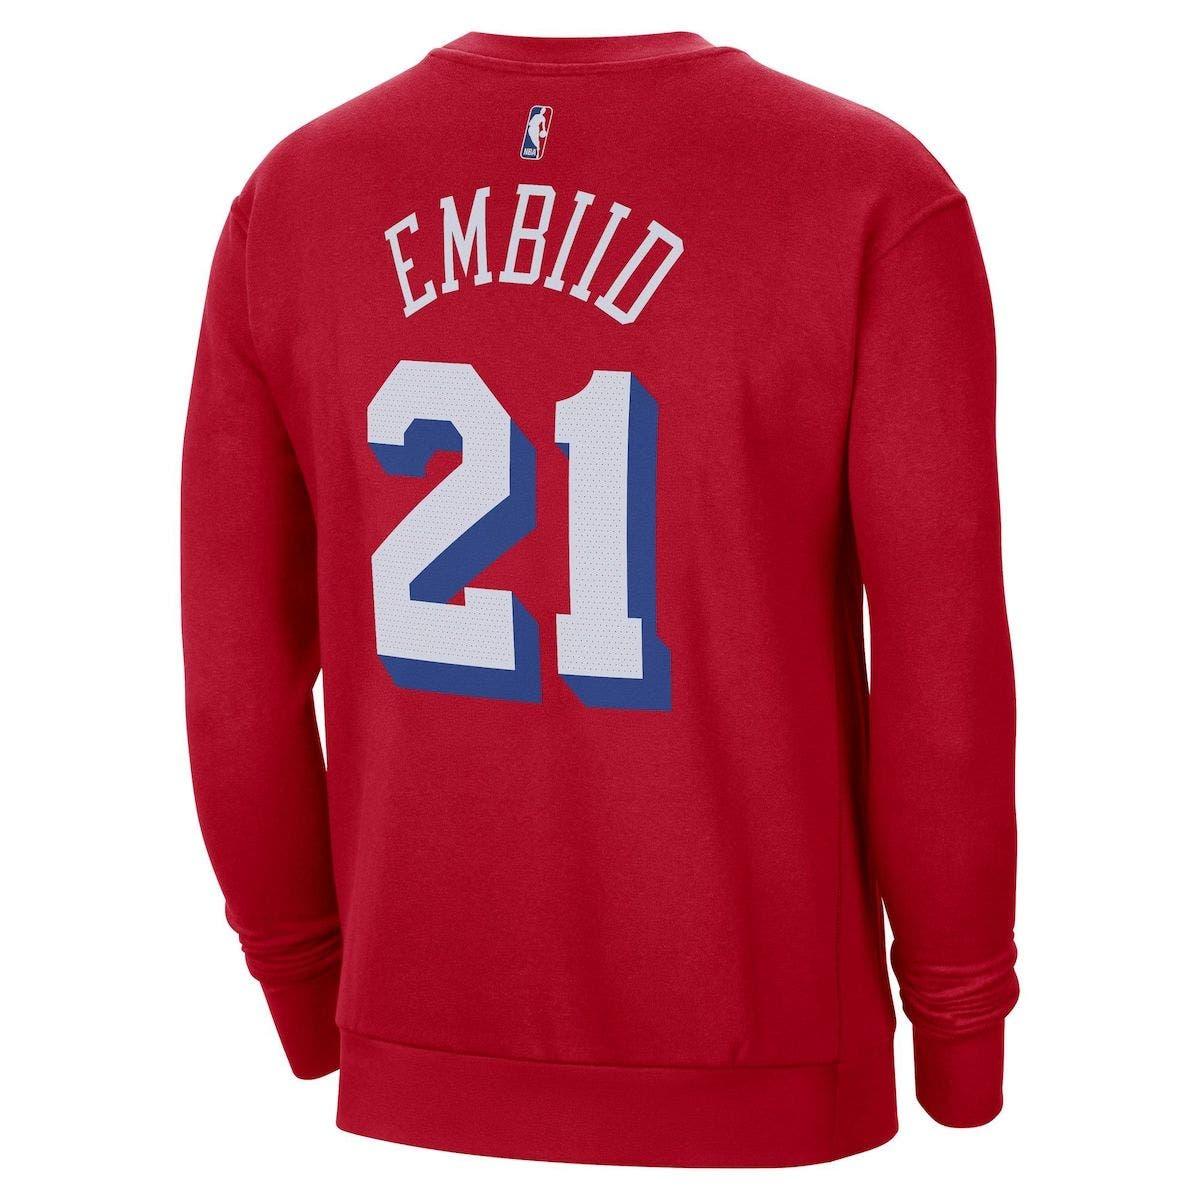 Jordan / Nike Men's Philadelphia 76ers Joel Embiid #21 Red Dri-FIT  Statement Swingman Jersey